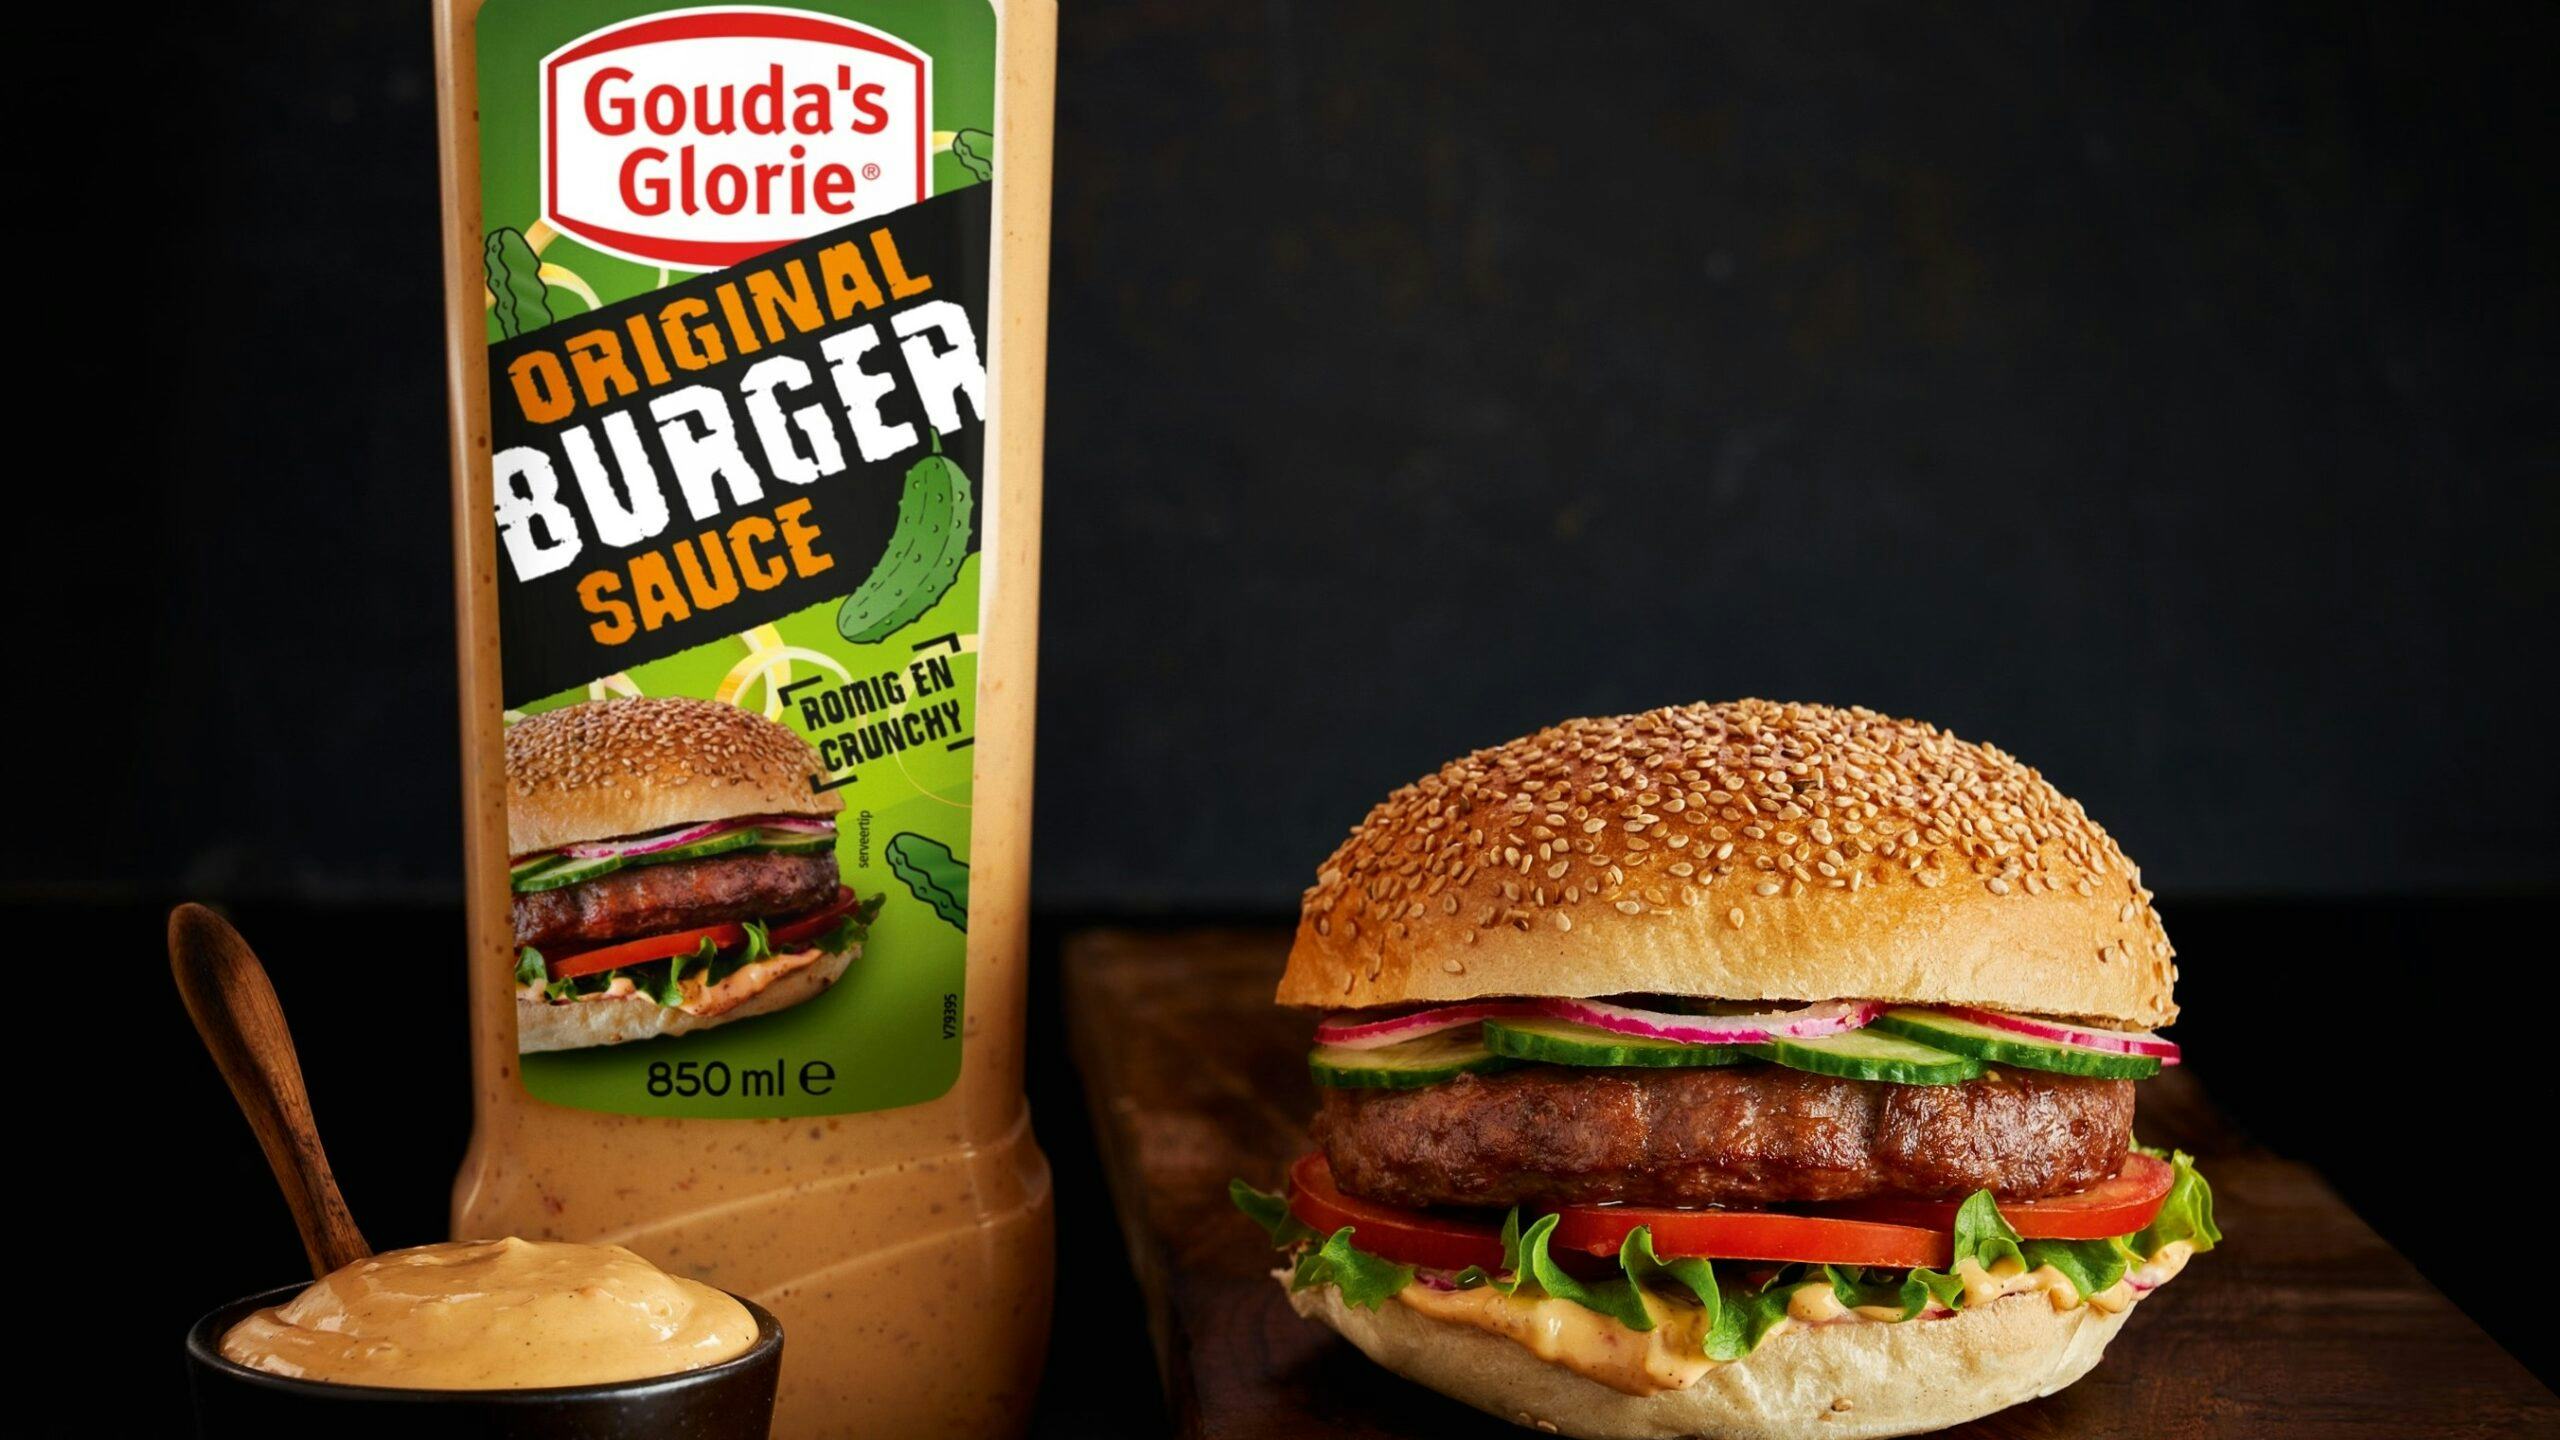 Gouda’s Glorie Burger Sauce: rijk gevuld met stevige bite